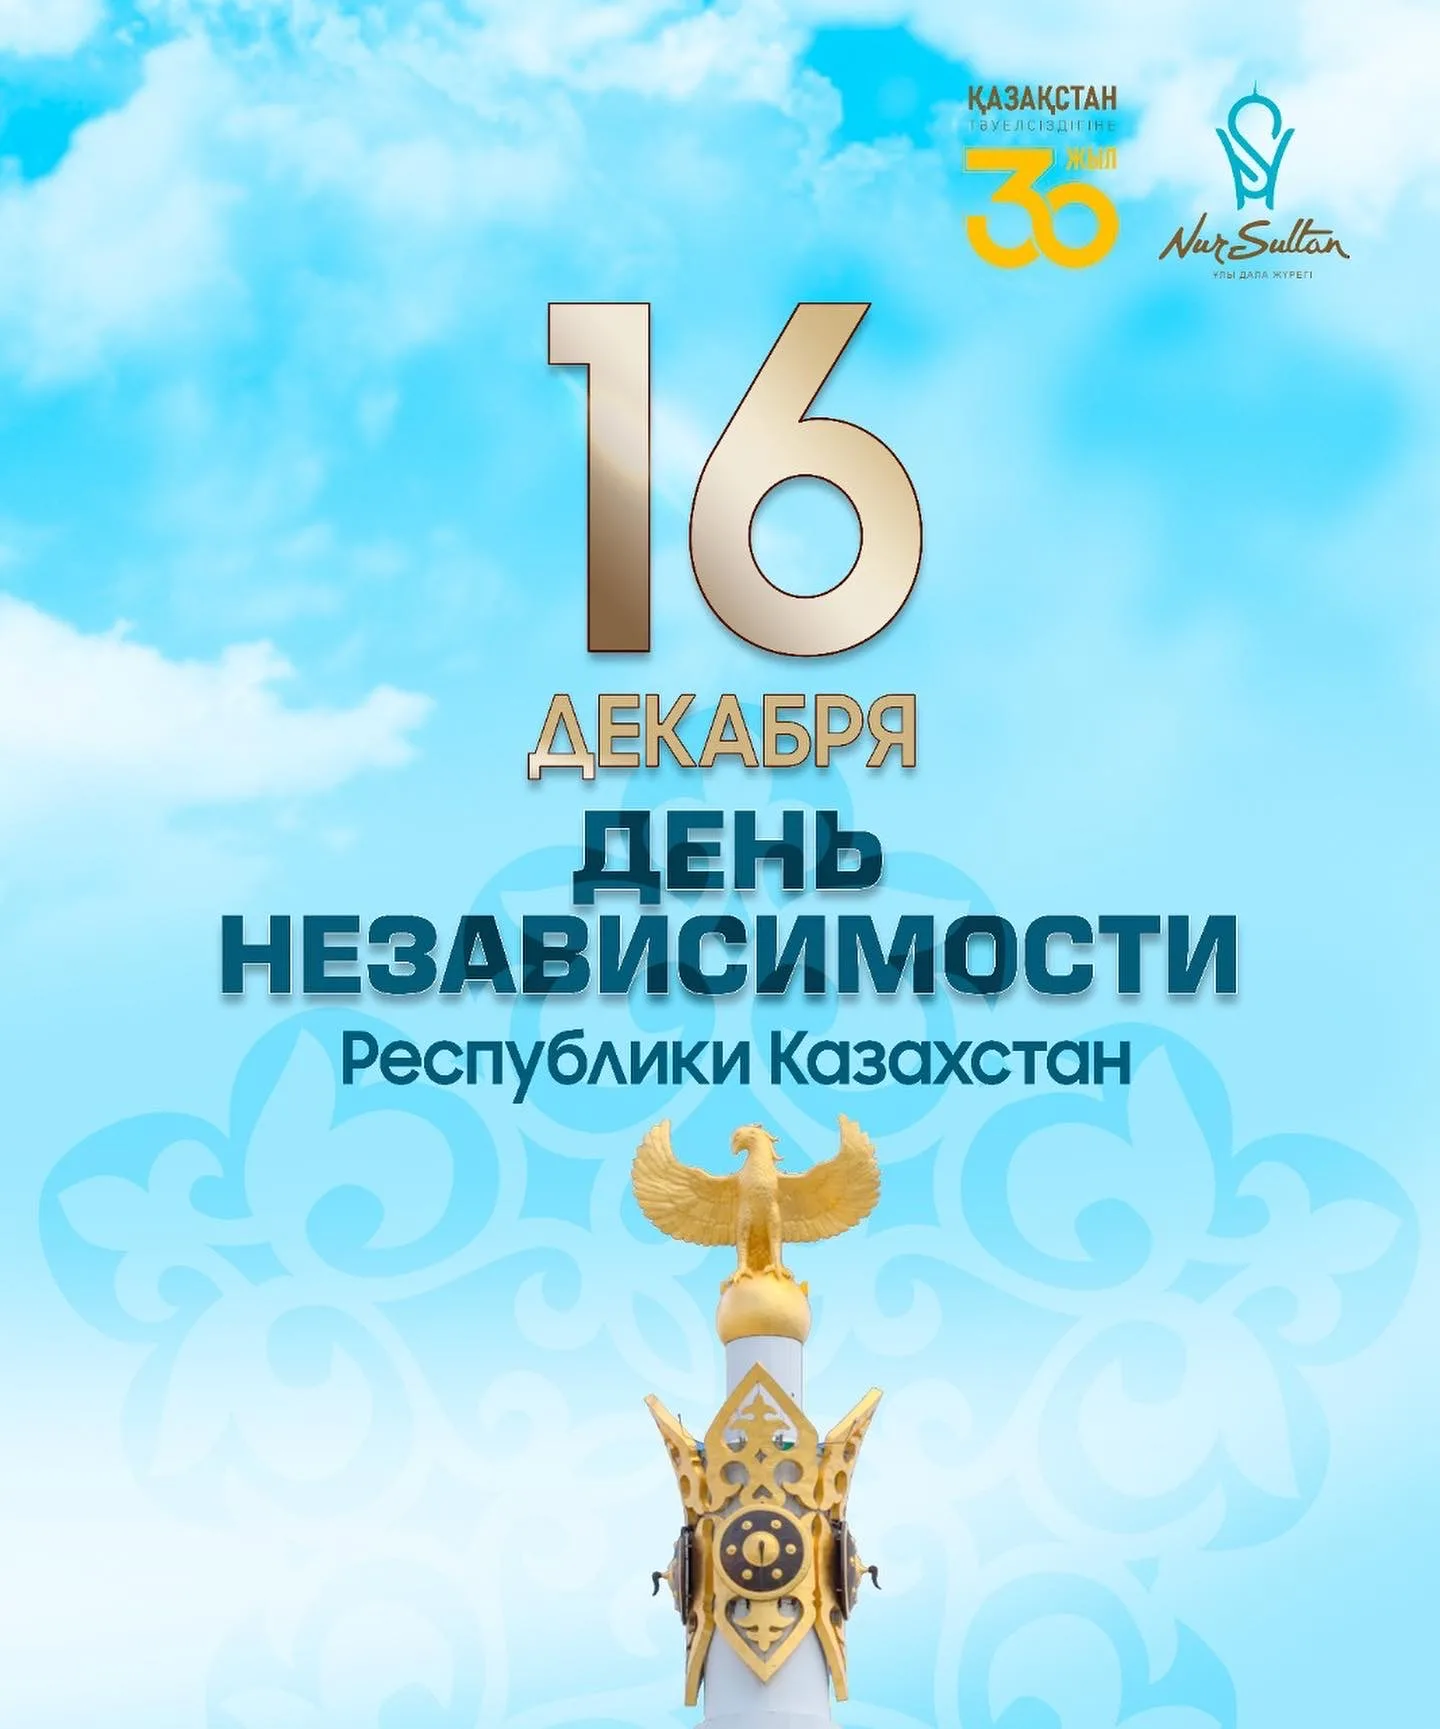 Фото Поздравления с Днем независимости Казахстана на казахском с переводом #84